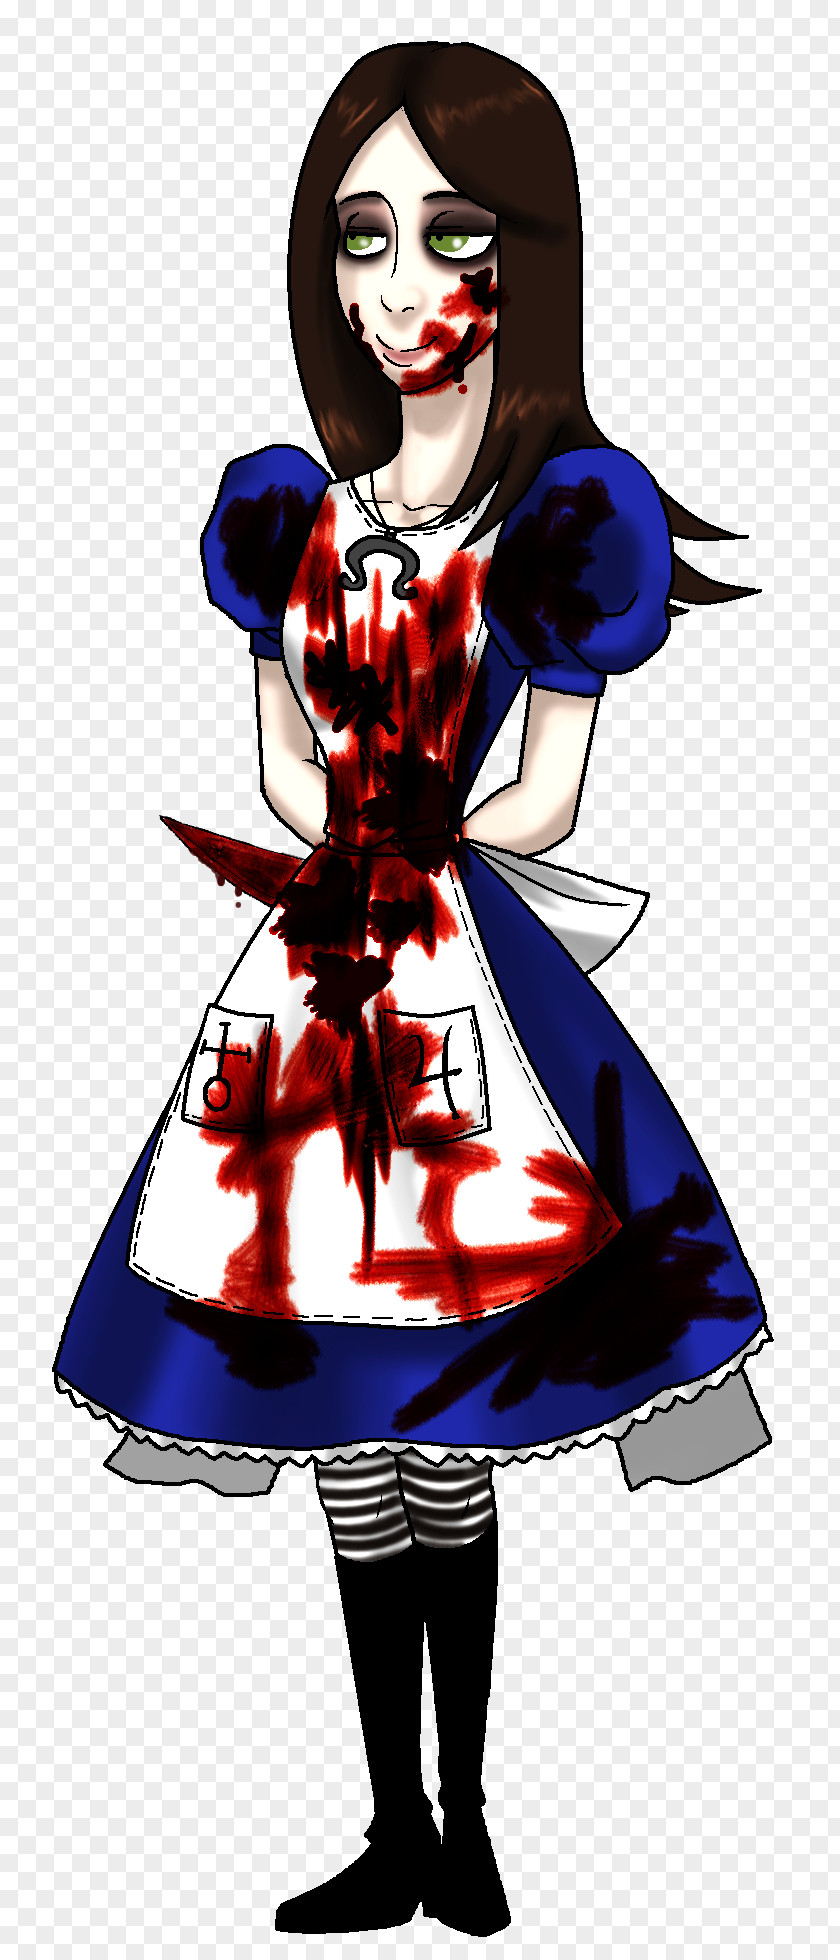 Alice Alice: Madness Returns Queen Of Hearts Alice's Adventures In Wonderland Jeff The Killer Creepypasta PNG